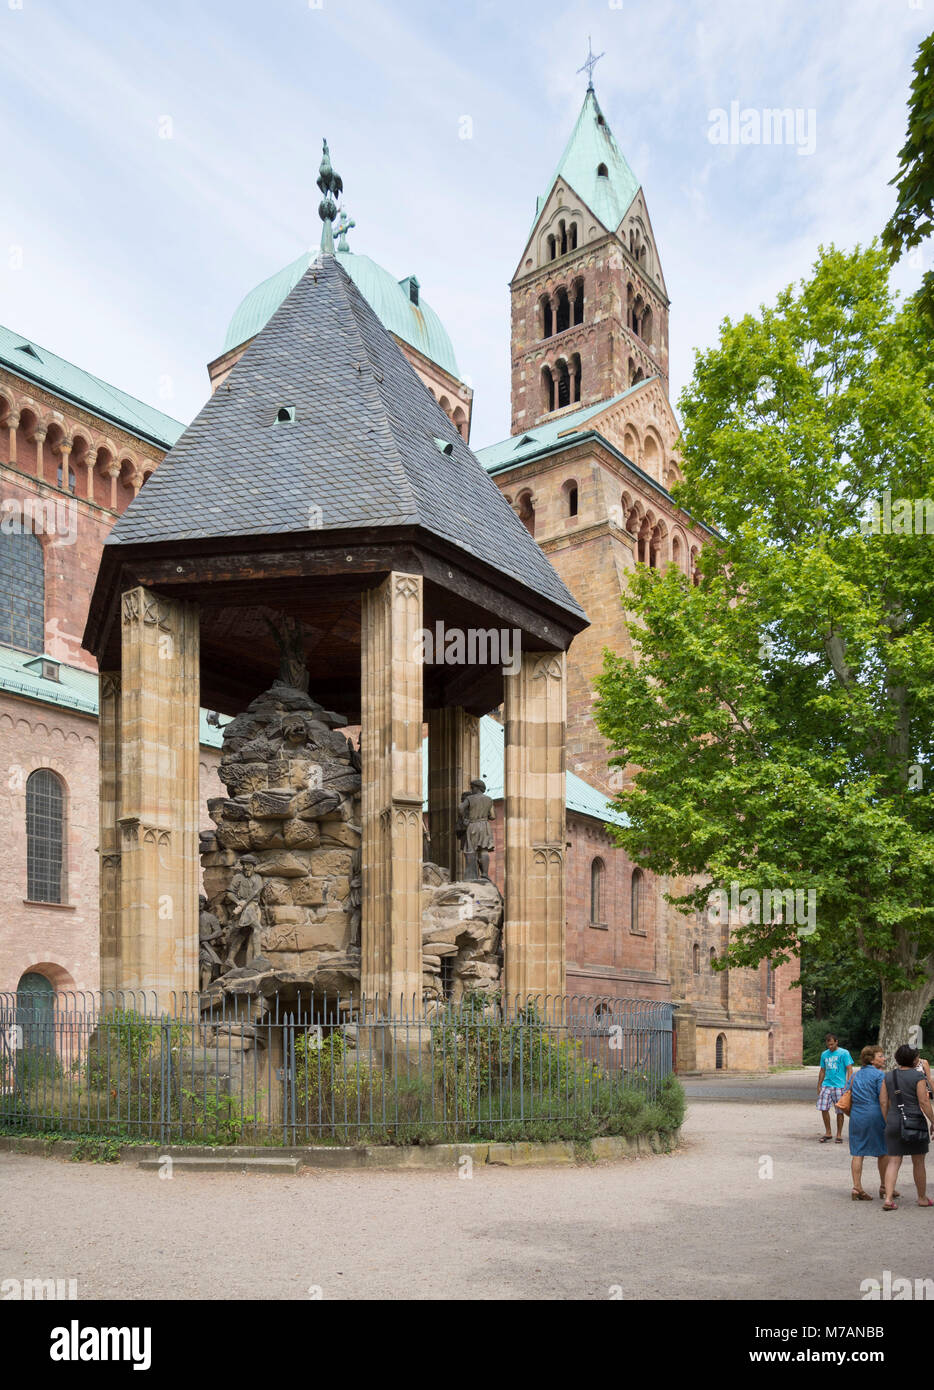 La Catedral de Speyer, iglesia románica más grande de Europa. Sitio de Patrimonio Mundial de la UNESCO. El Domgarten meridional con el Monte de los Olivos, antiguamente el centro del claustro de la catedral, el grupo de figuras de piedra creado por Gottfried Renn (Escultor de Speyrer) Foto de stock